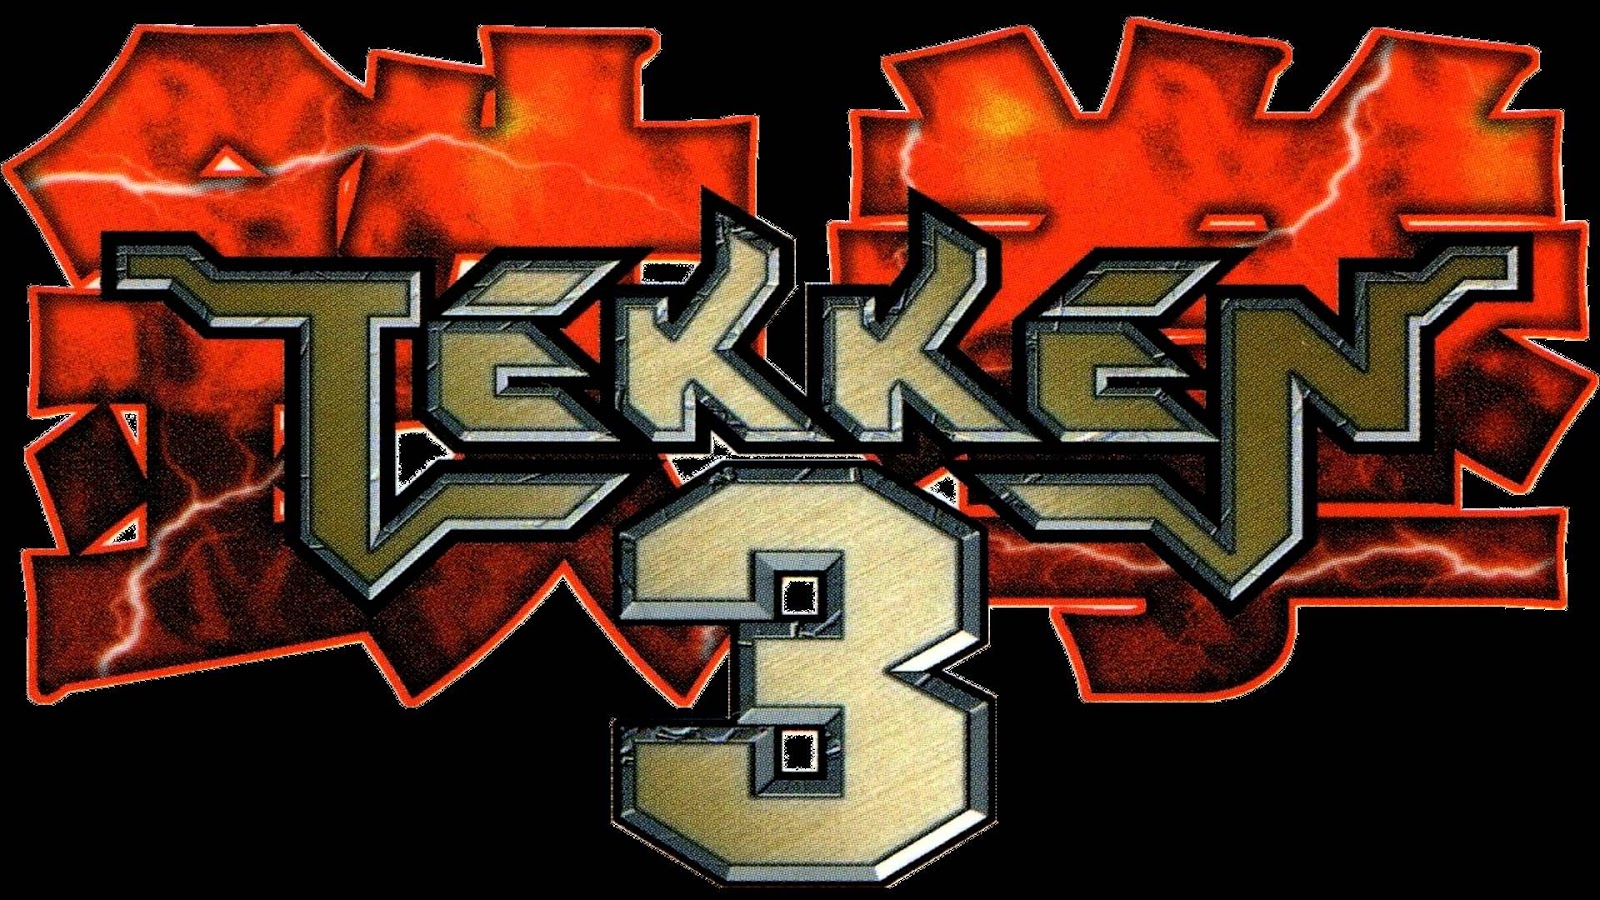 tekken 3 game cheats download